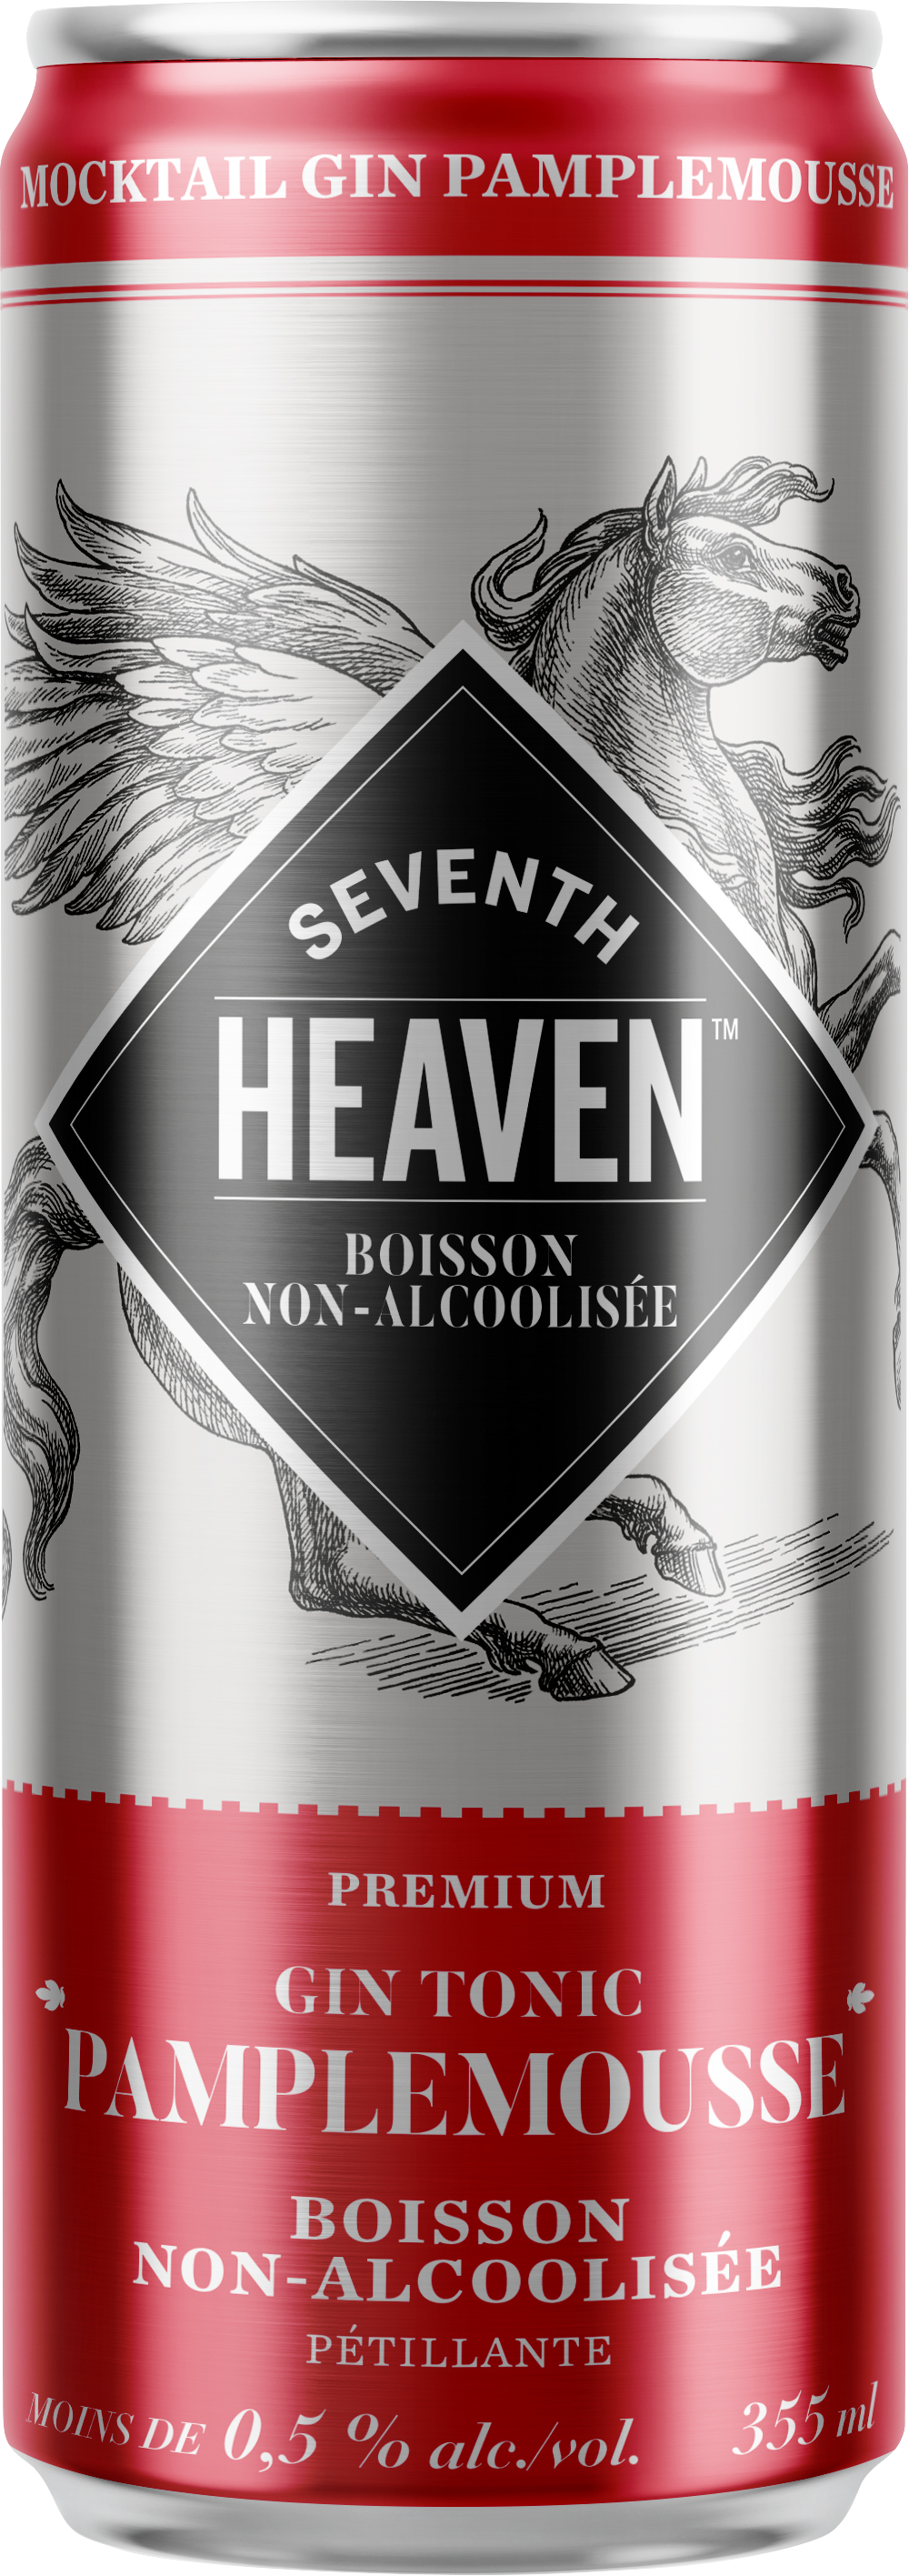 Seventh Heaven Gin Tonic Pamplemousse Boisson non-alcoolisée